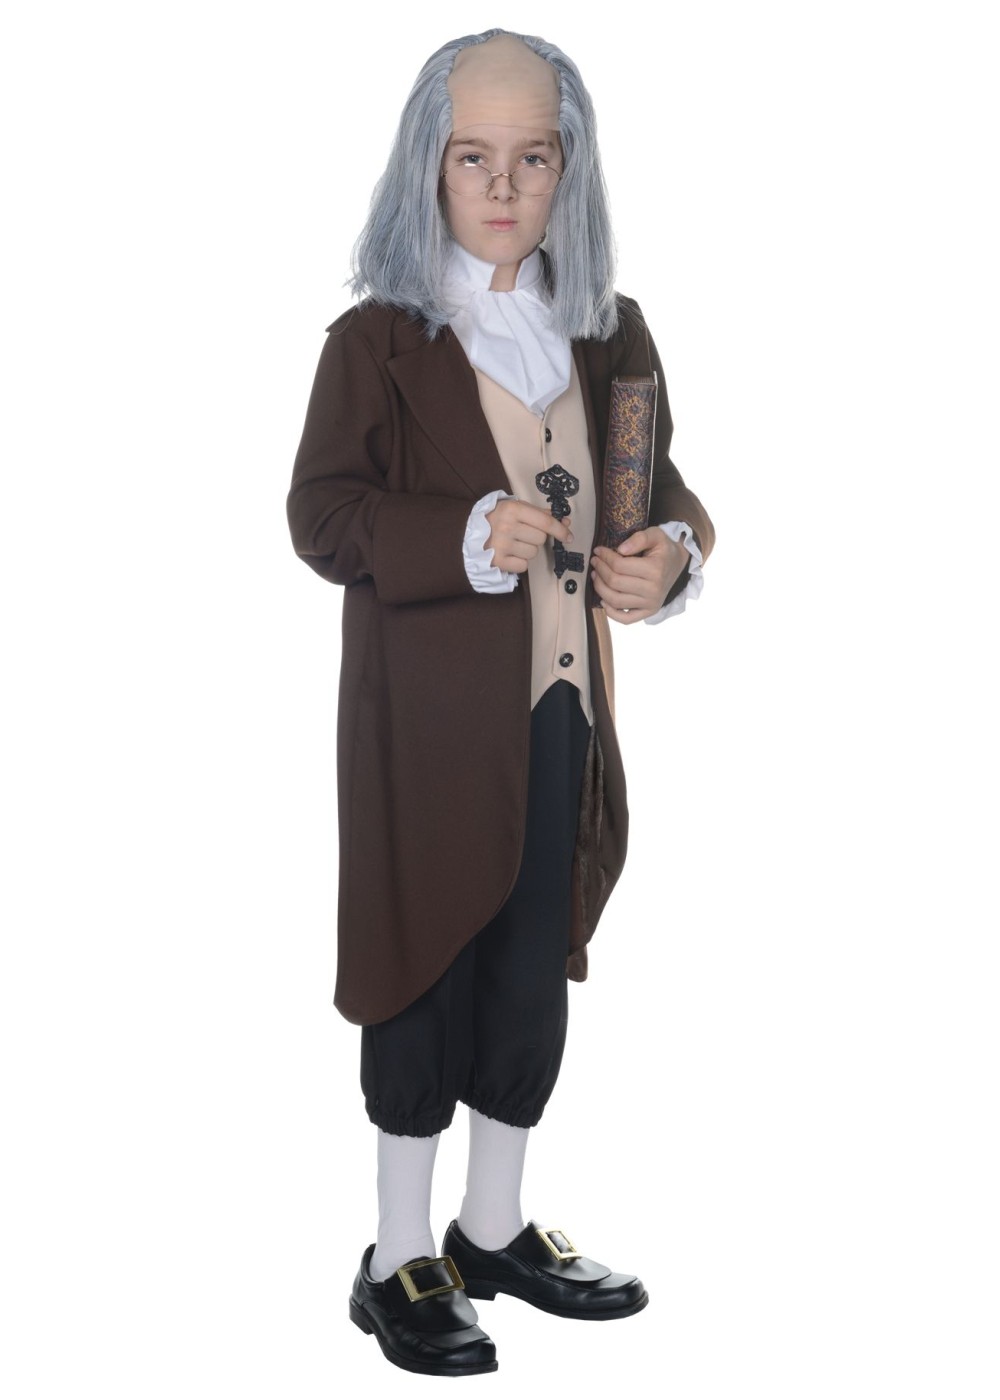 Benjamin Franklin Boys Costume